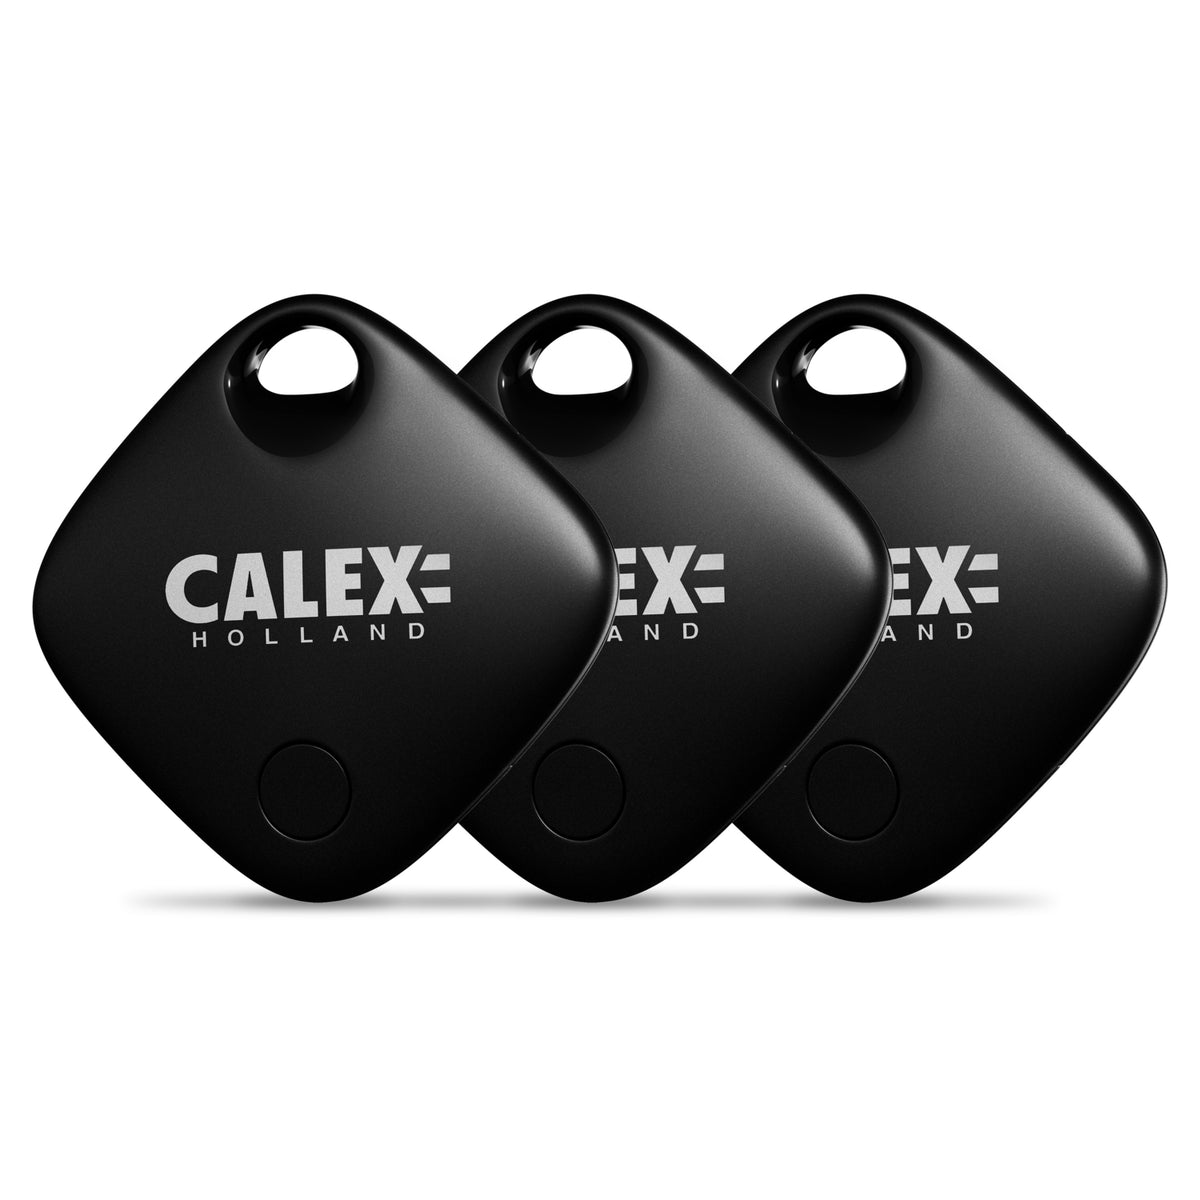 Calex Smart Tag - 3 pieces - Bluetooth Tracker